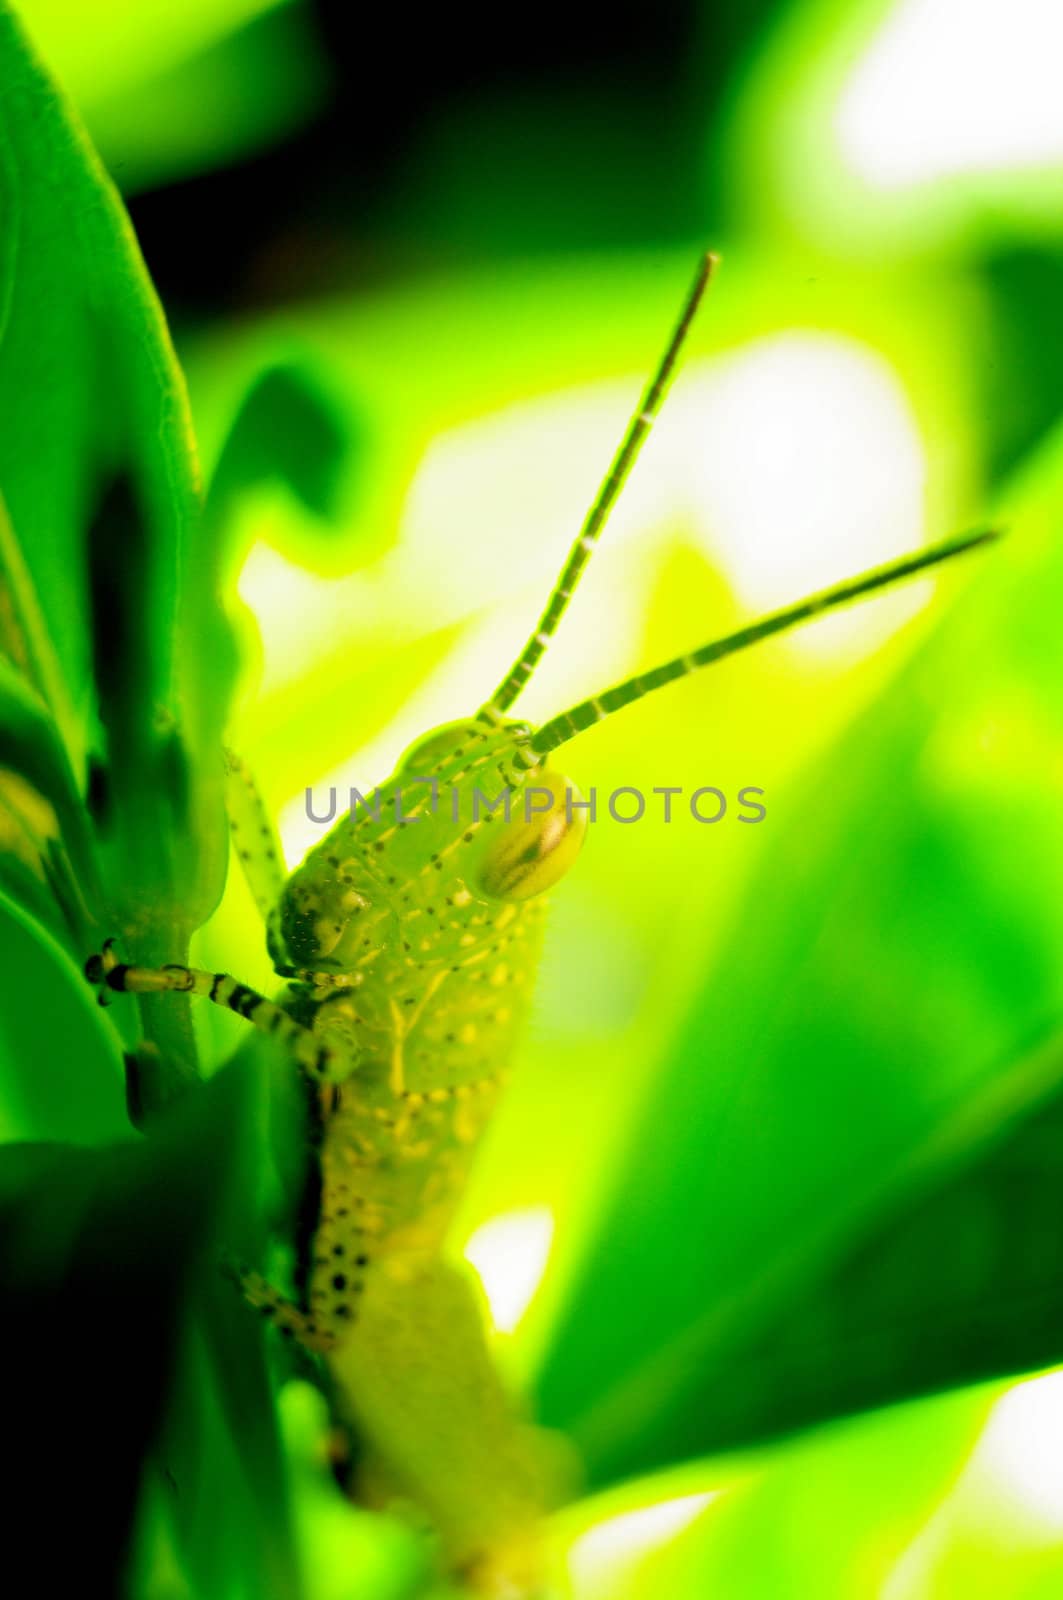 Grasshopper at back the leaf, Close up shot